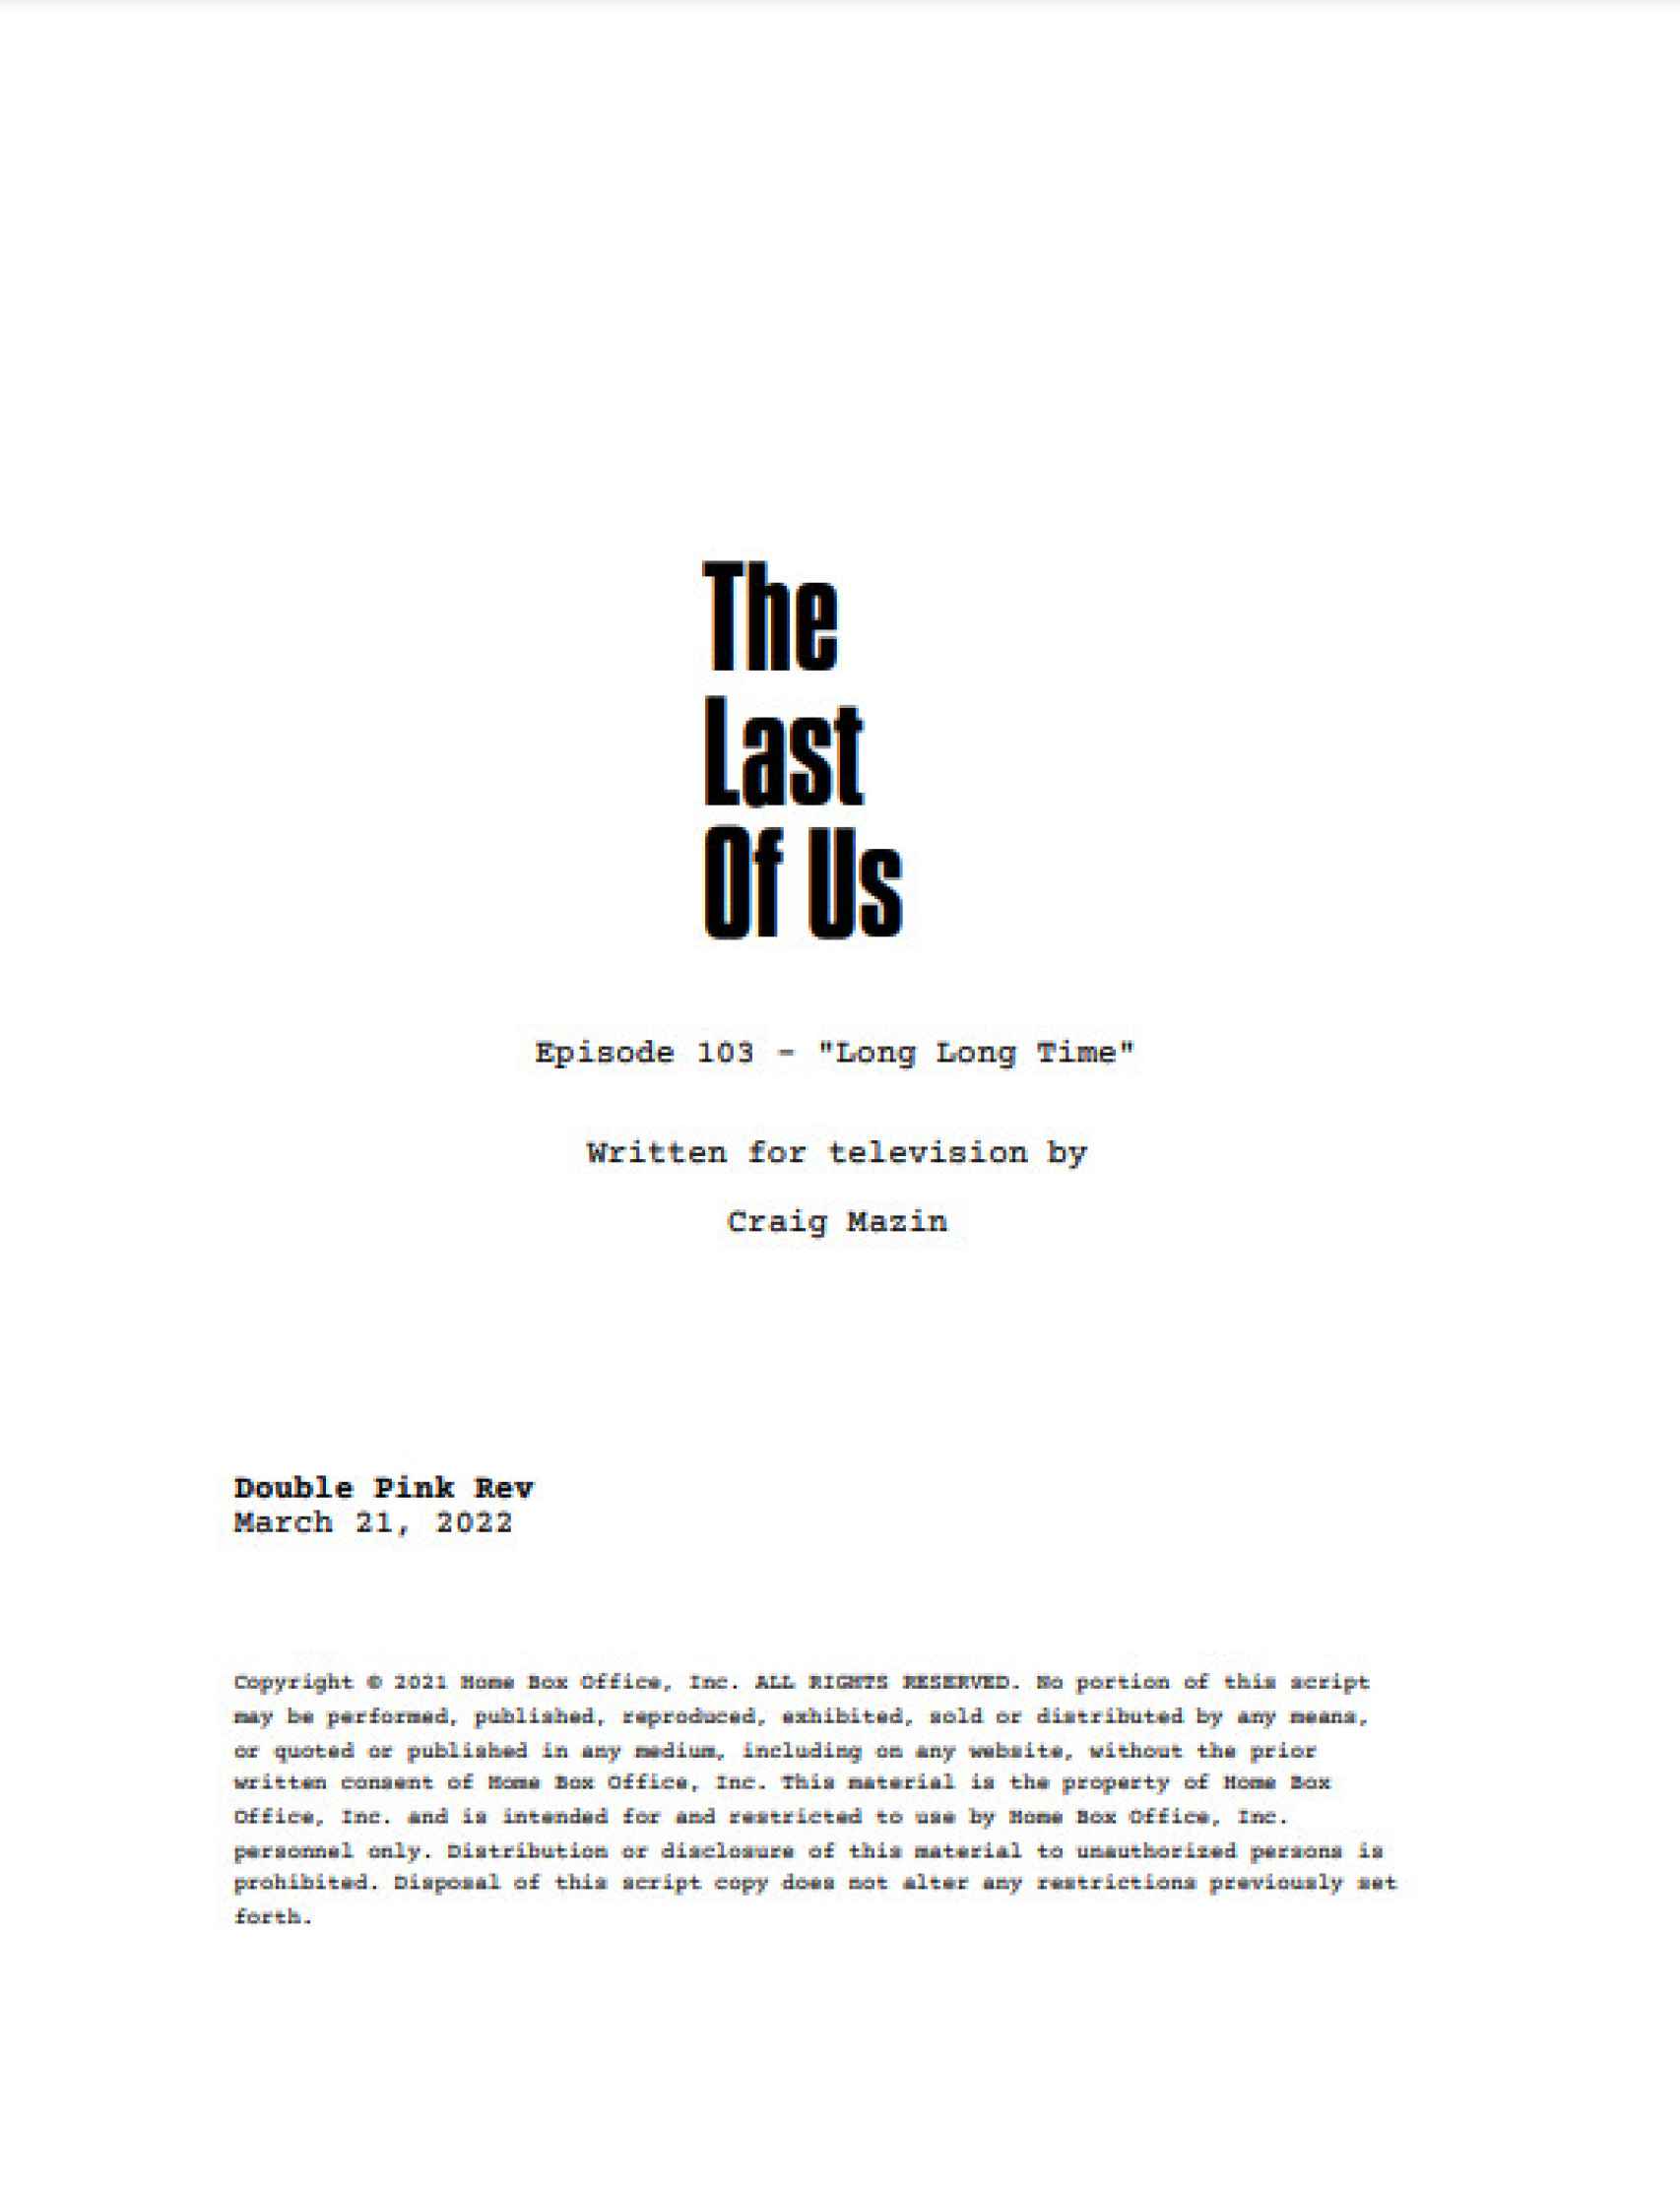 Imagen de la portada del guion del episodio 1x03, titulado 'Mucho mucho tiempo'.